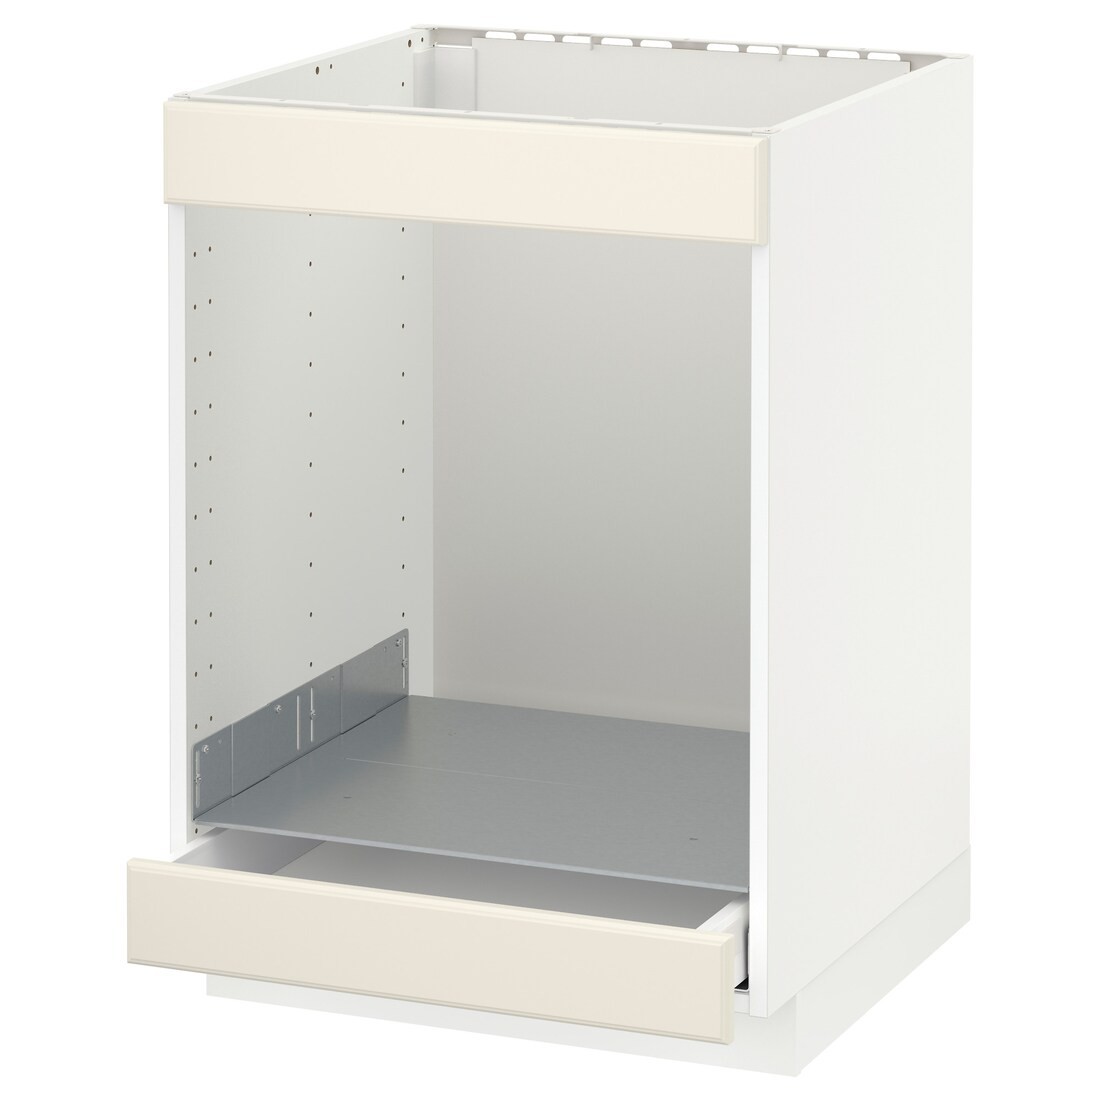 IKEA METOD МЕТОД / MAXIMERA МАКСИМЕРА Шкаф под духовку / варочную поверхность / с ящиком, белый / Bodbyn кремовый, 60x60 см 59004379 590.043.79